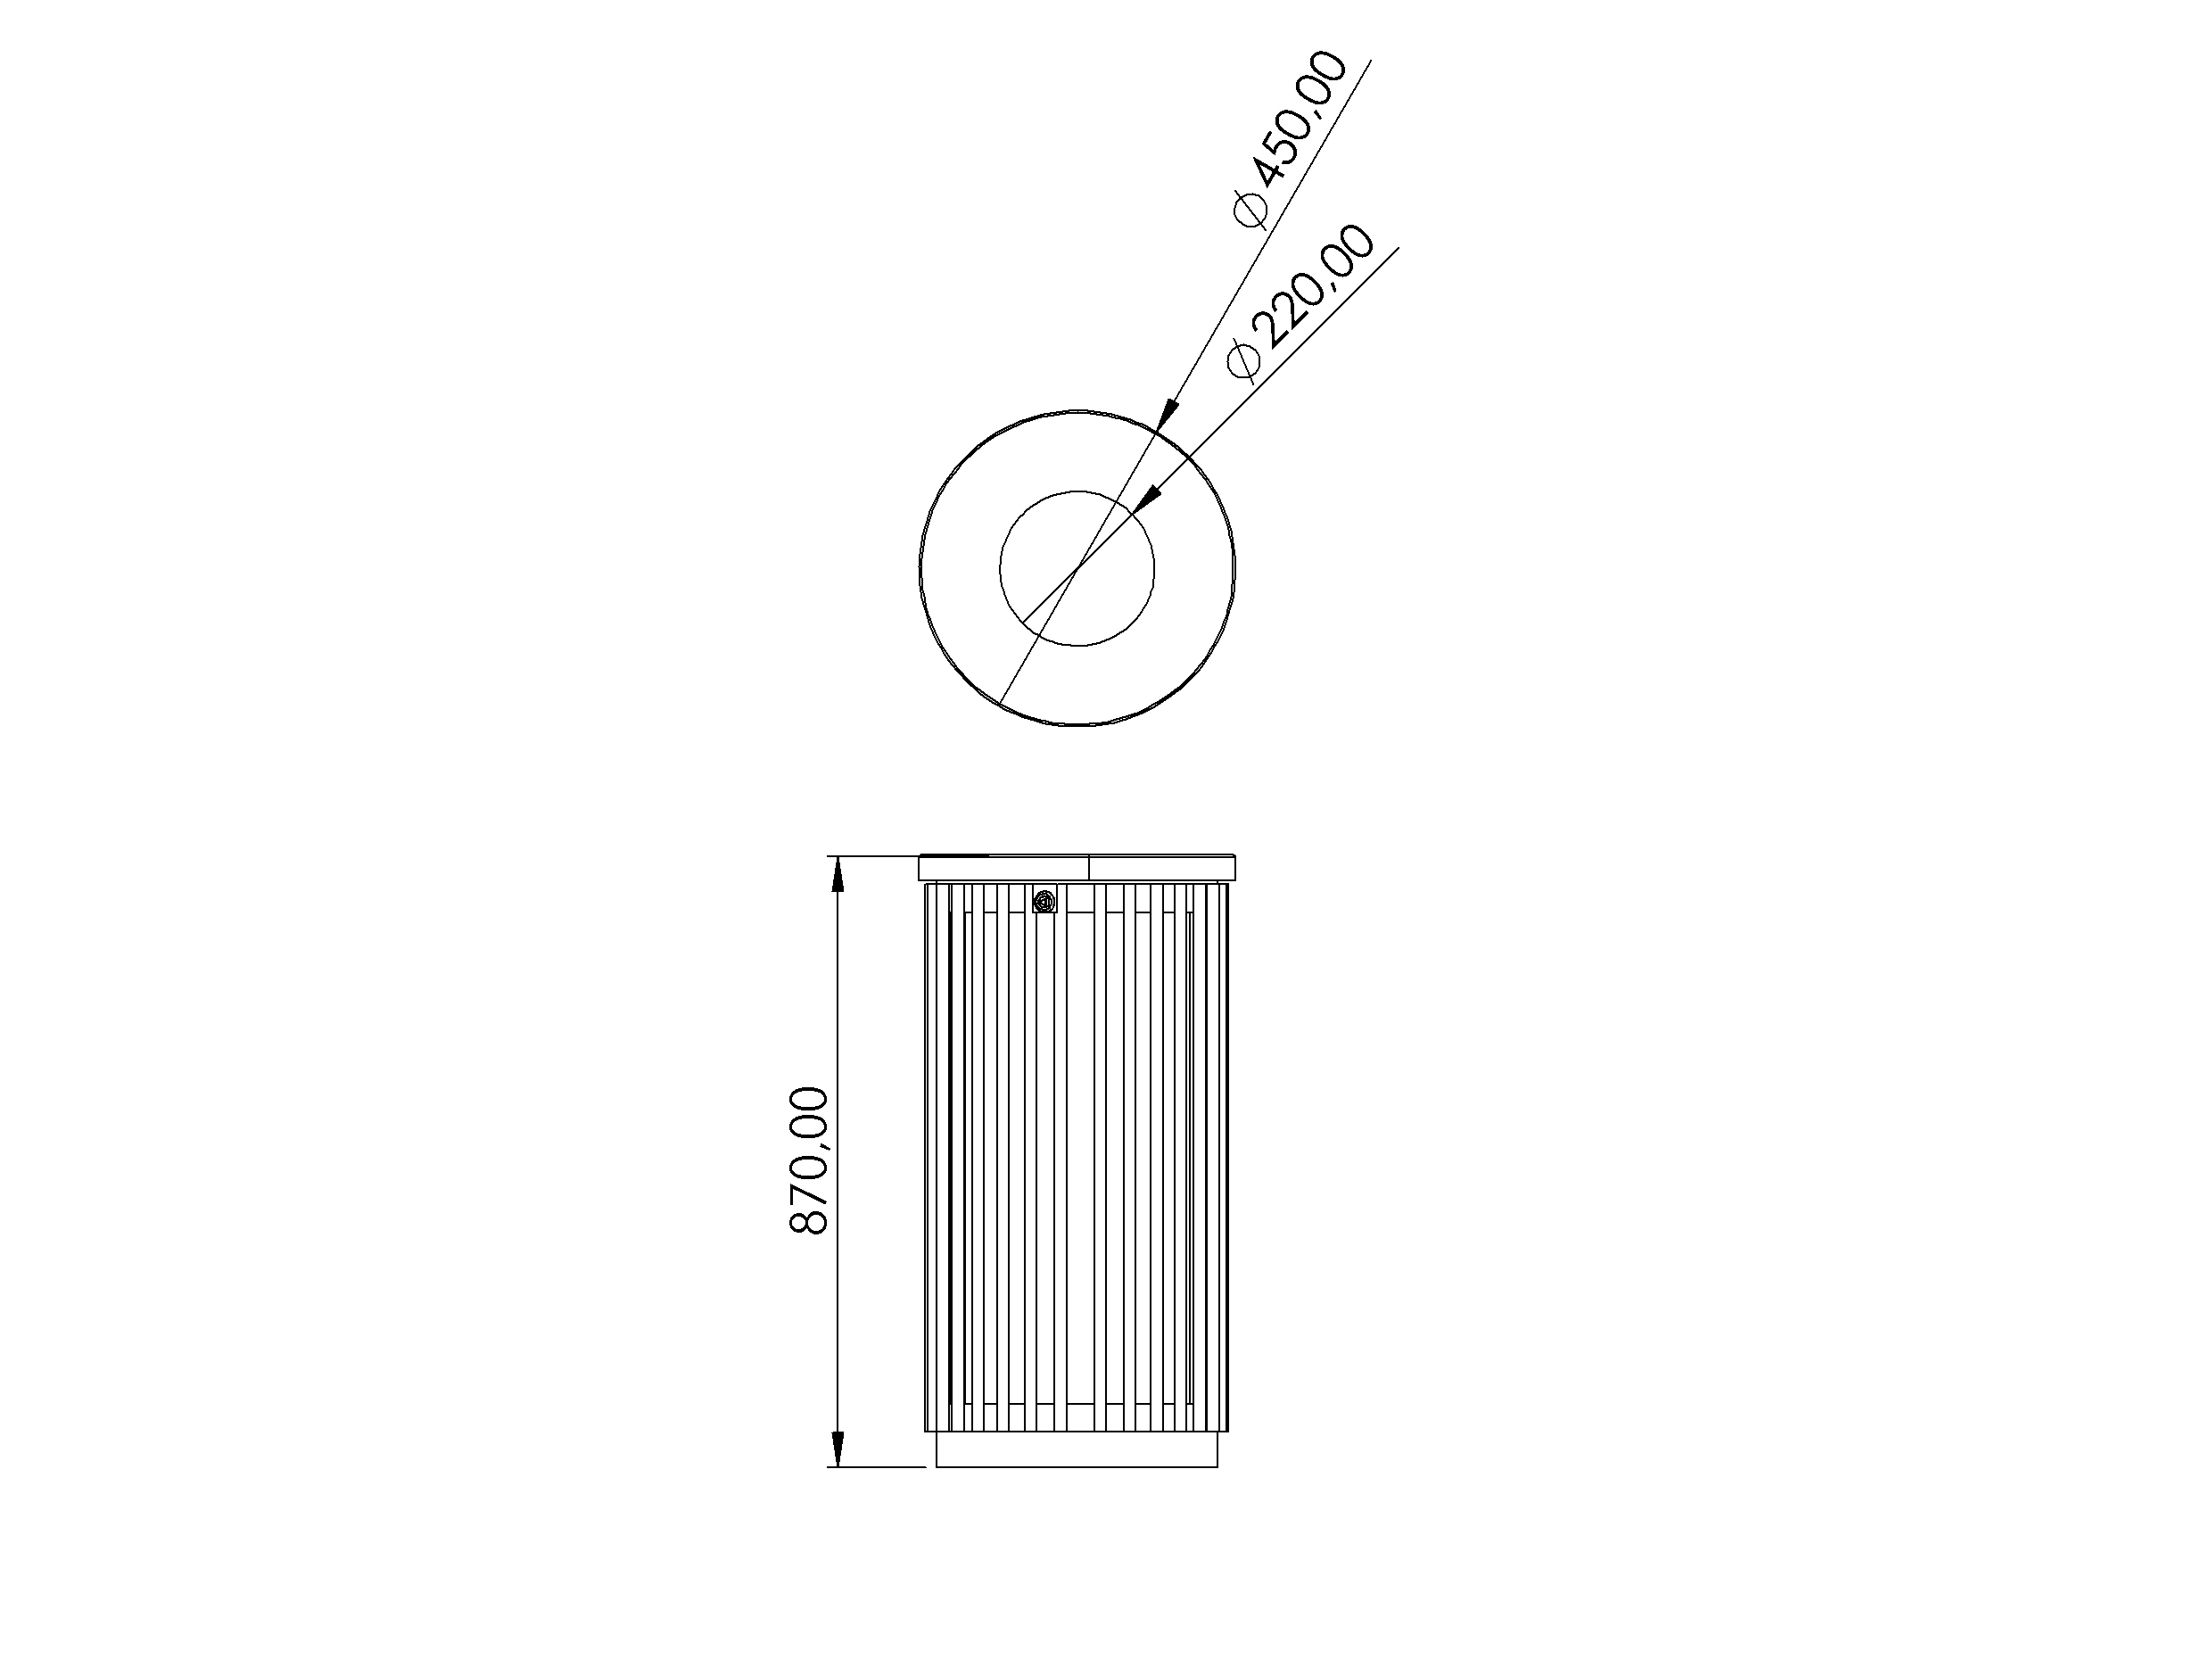 Technische Zeichnung - Abfallbehälter KNS S MAR11 – 45cm, aus Stahl, außenbereich